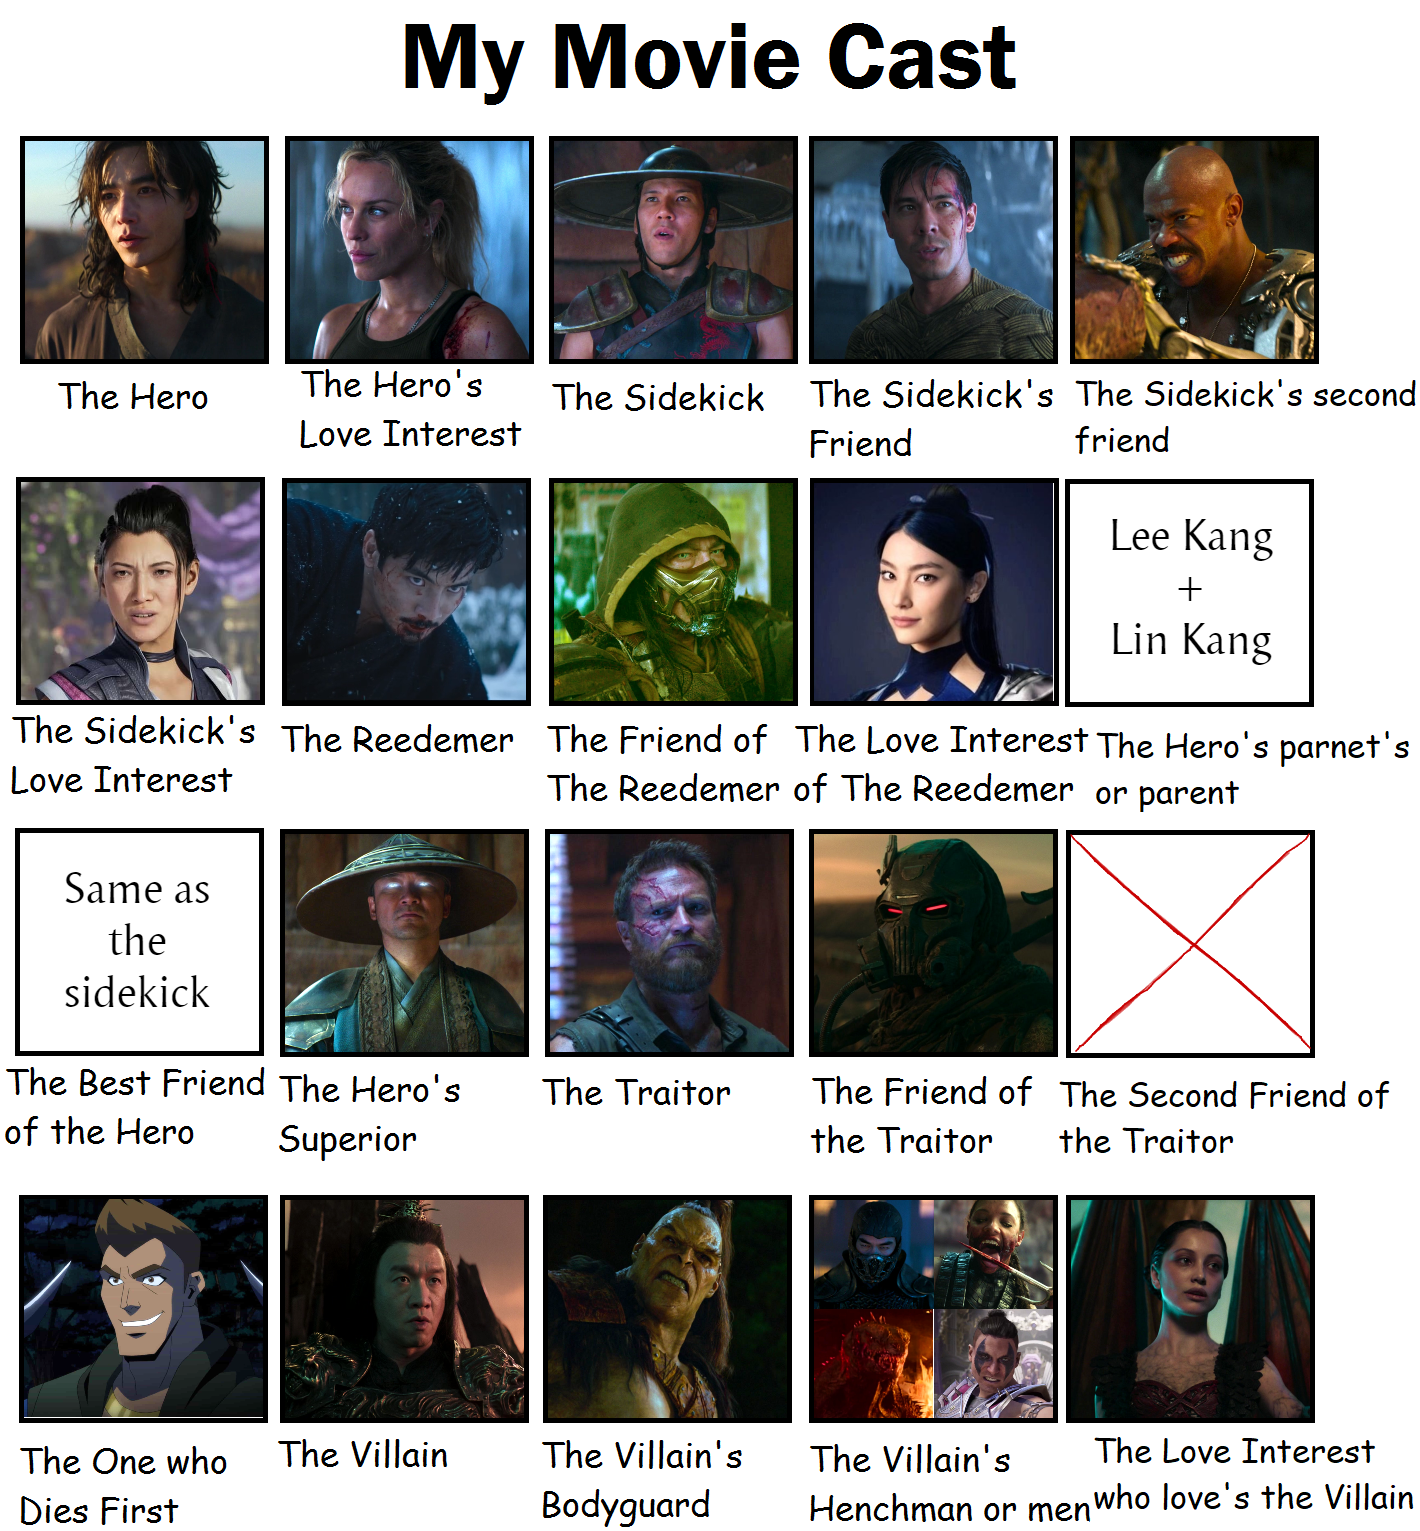 Cast Characters  Mortal kombat characters, Mortal kombat, Mortal